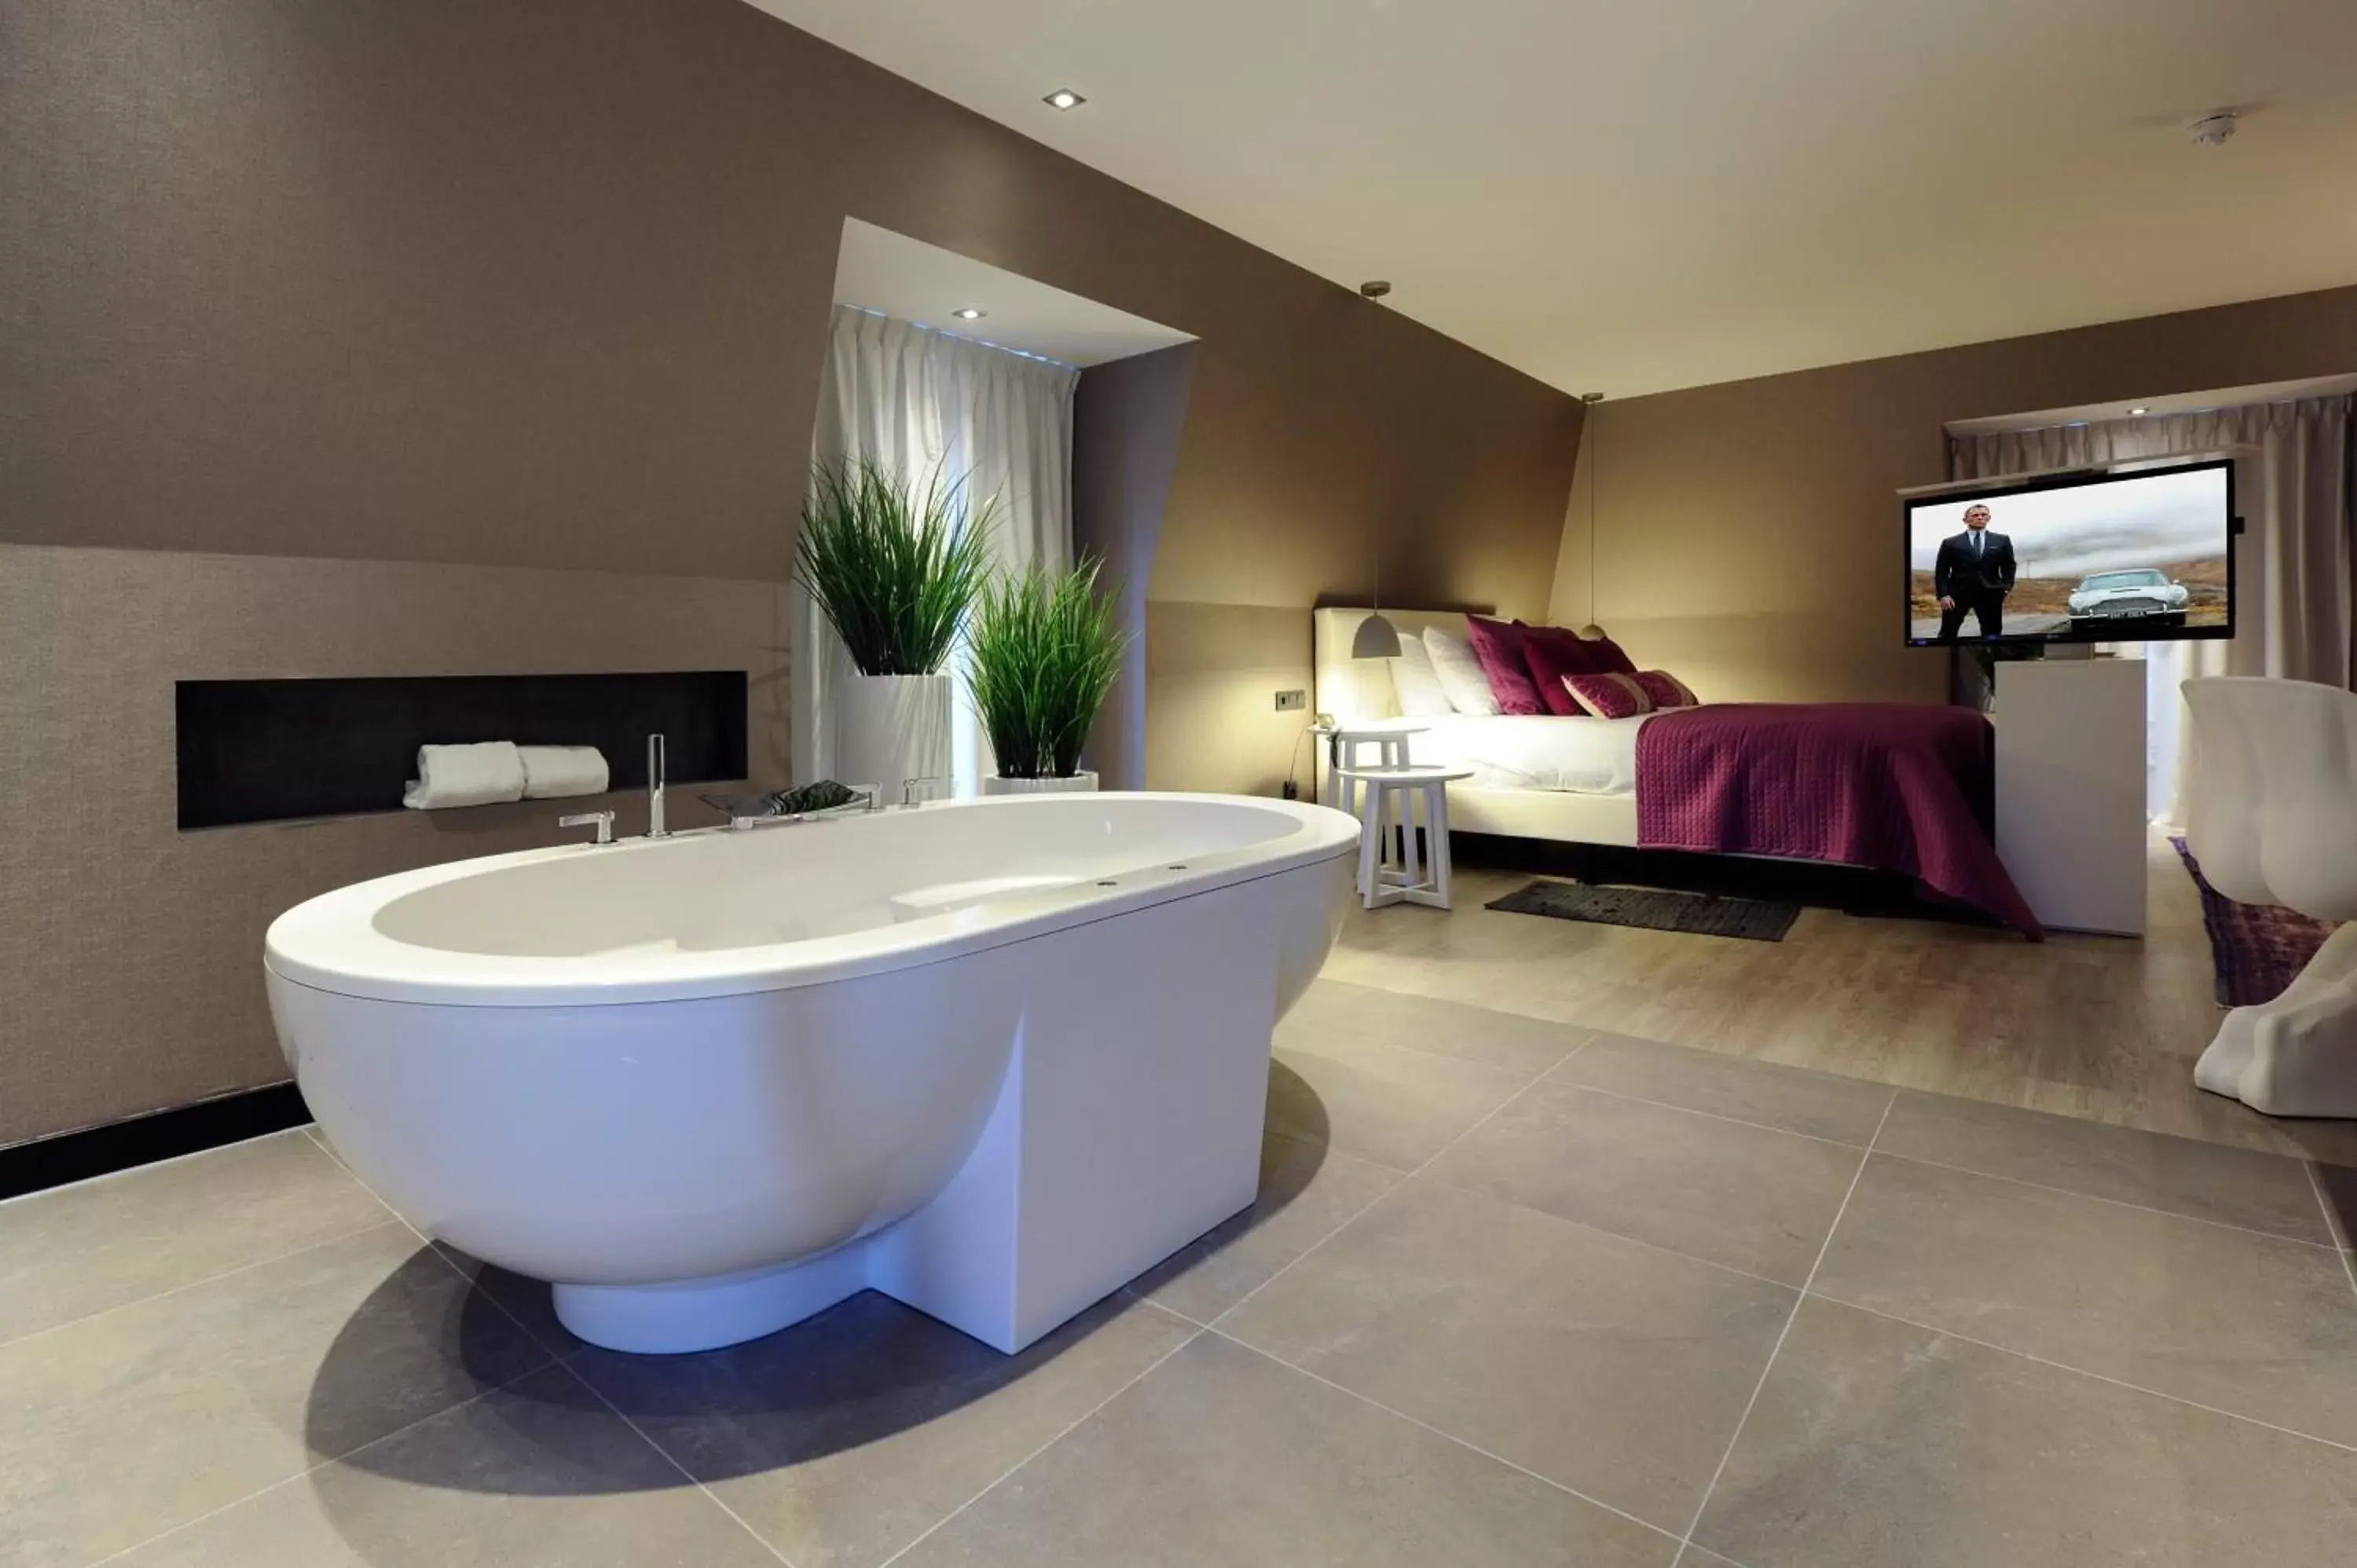 Bed, Bathroom in Van der Valk Hotel de Bilt-Utrecht